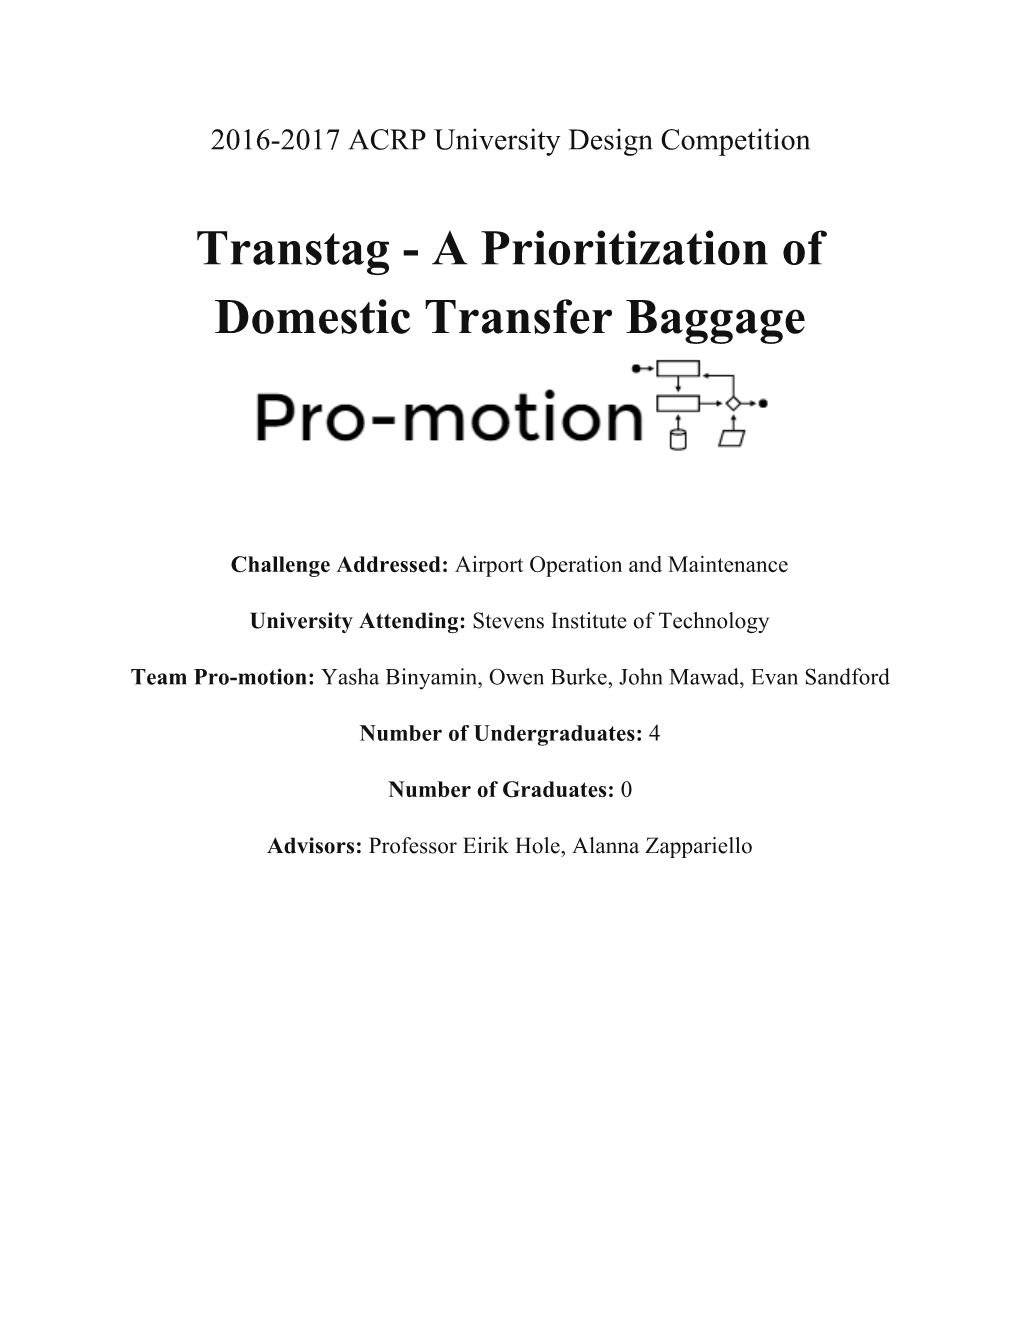 Transtag - a Prioritization of Domestic Transfer Baggage